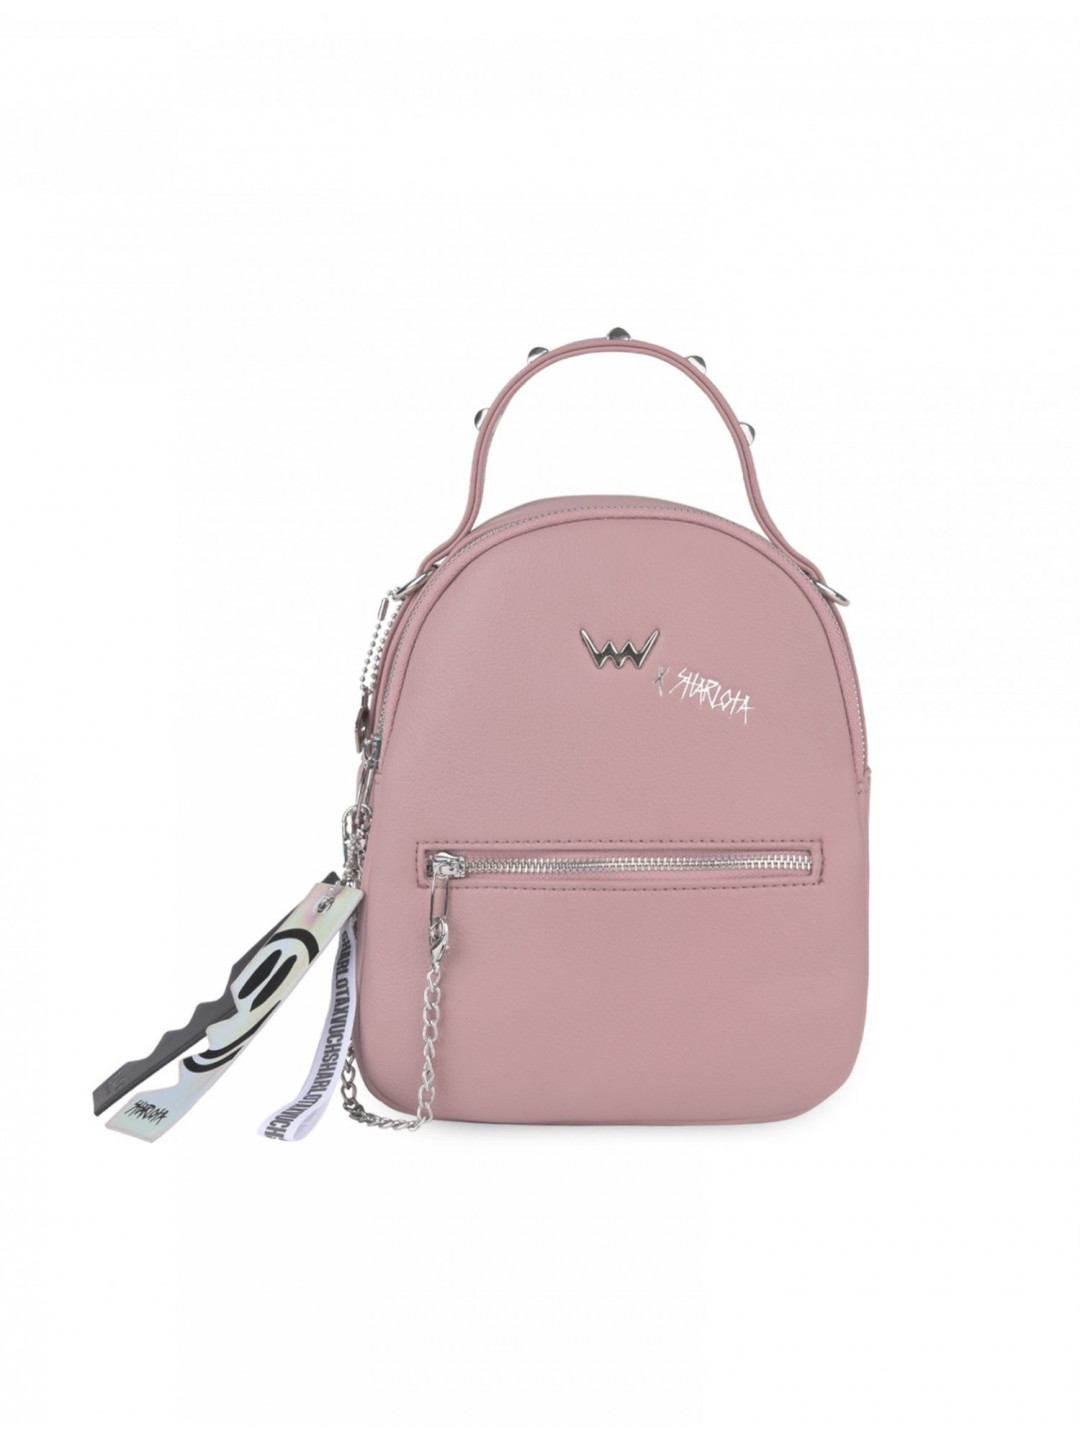 Dámský batůžek kabelka růžový – Vuch WILD ONE ADVENTURE PINK